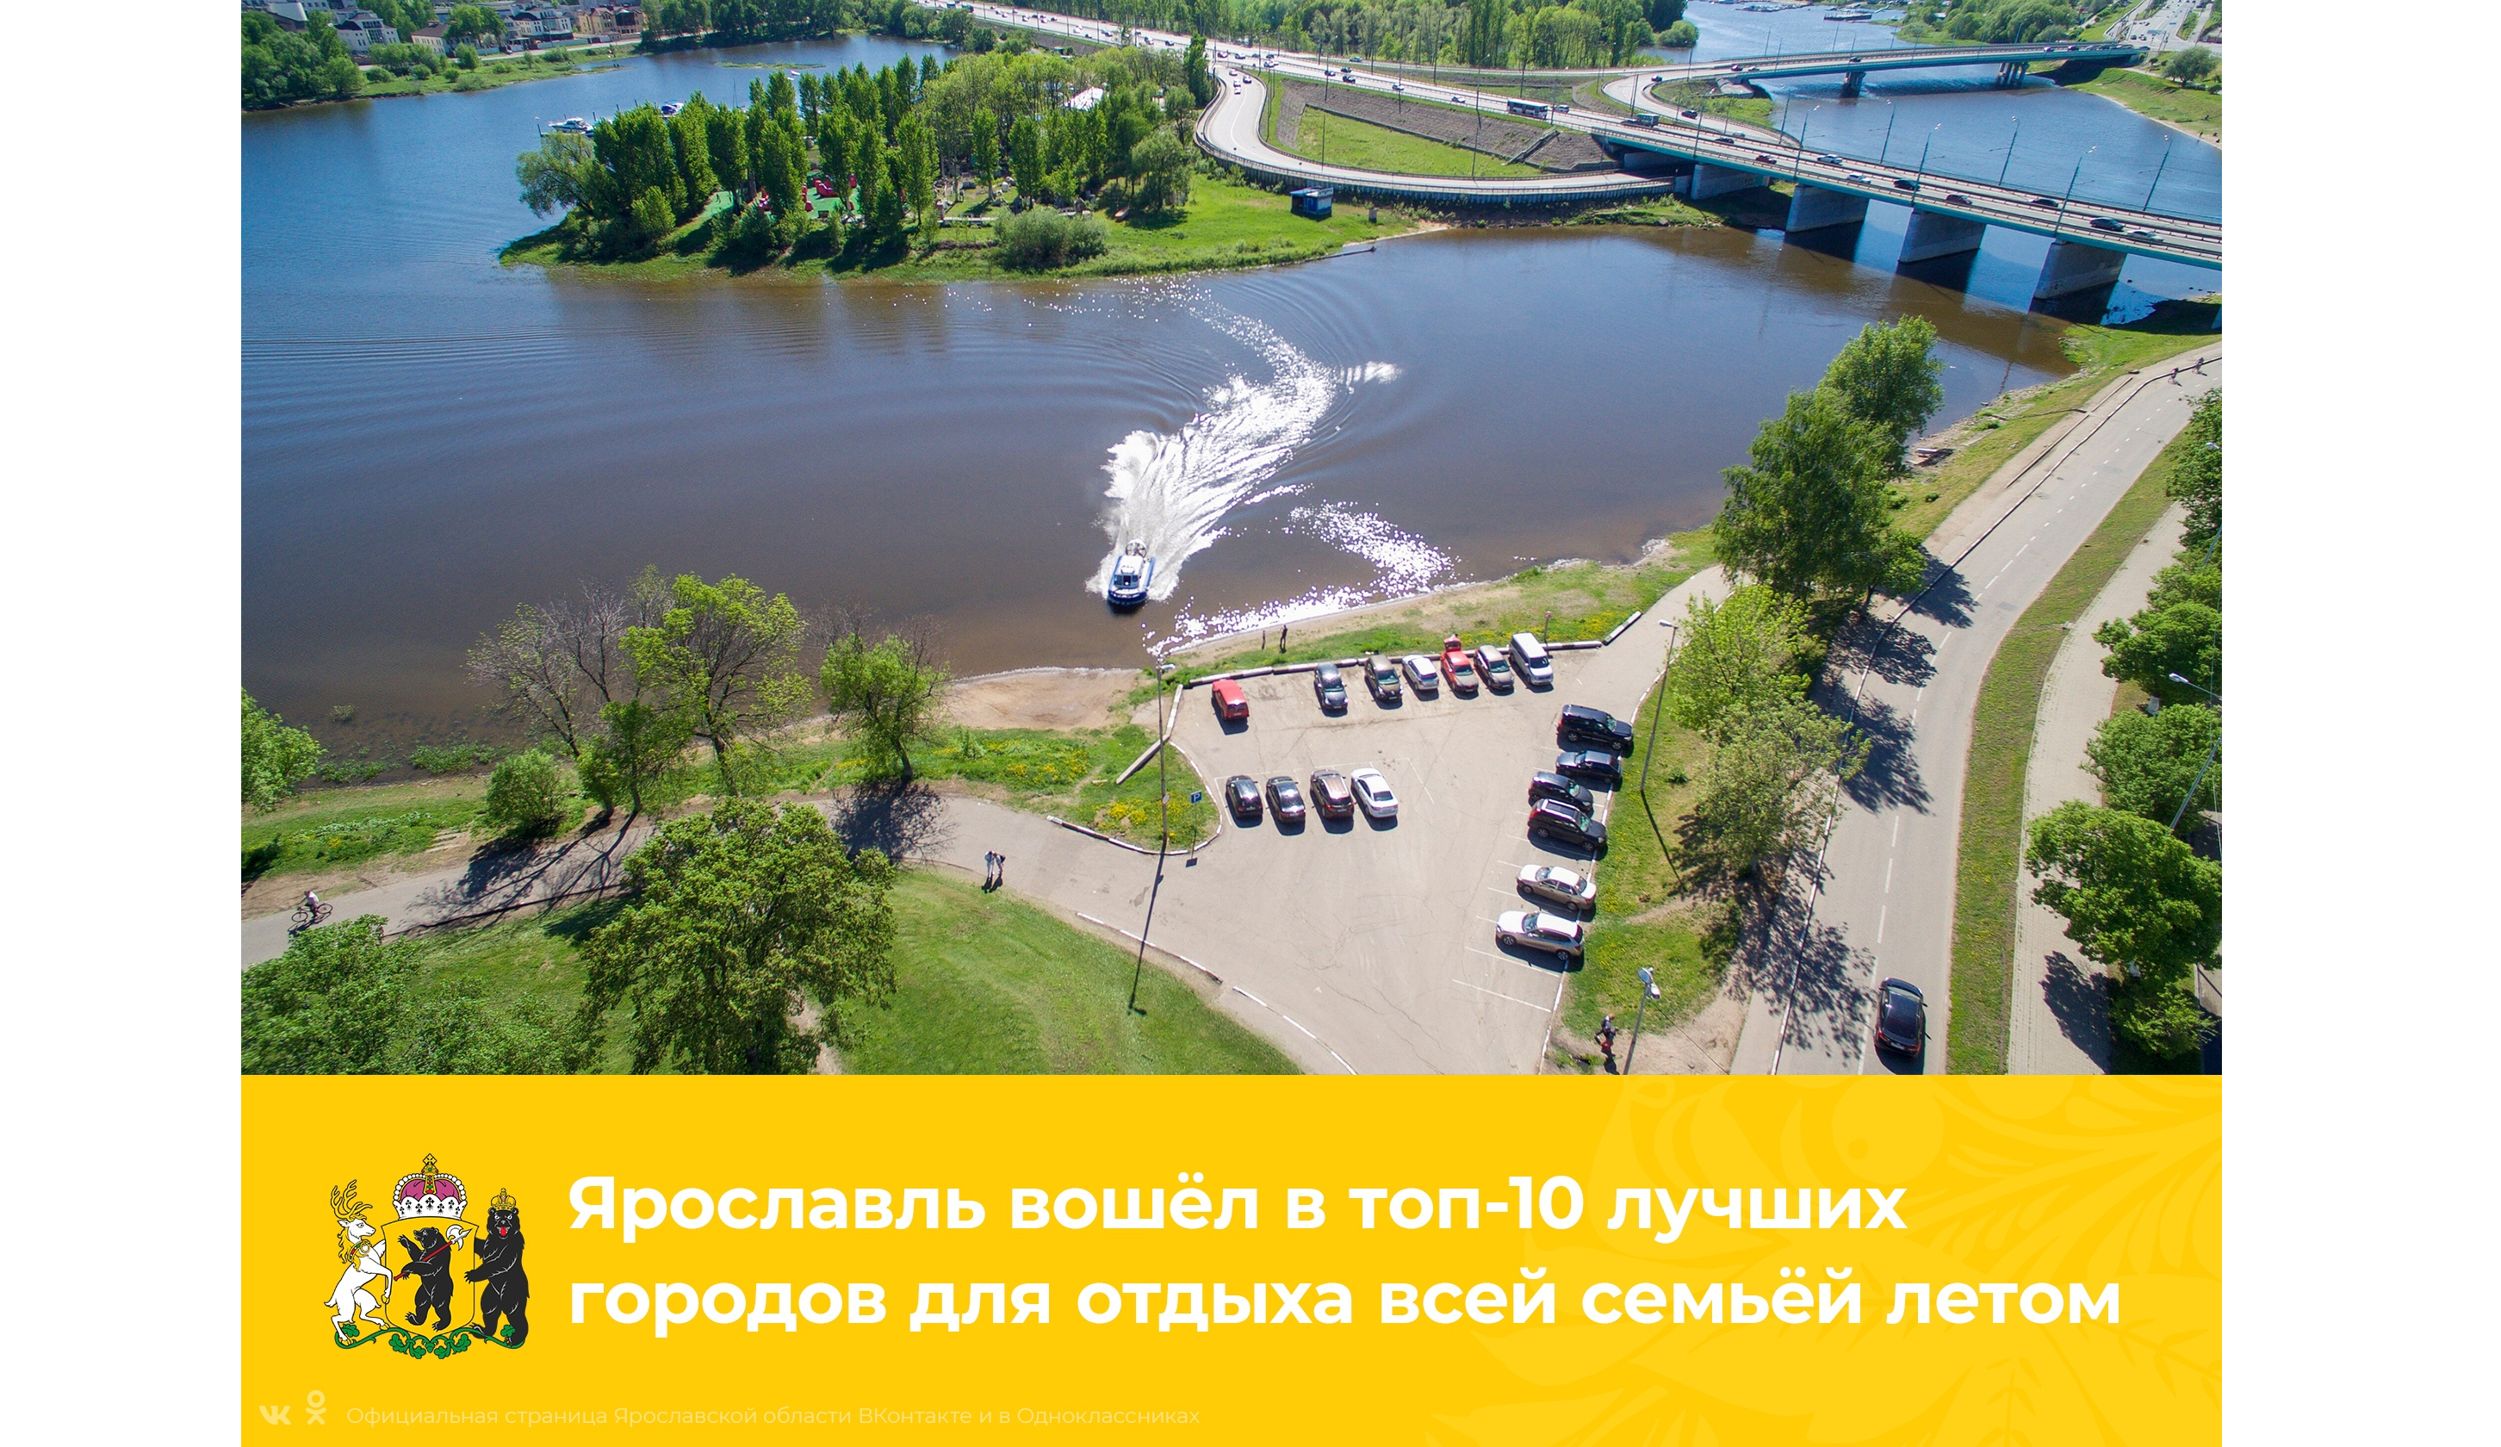 Ярославль вошёл в топ-10 популярных городов для путешествий летом всей семьей